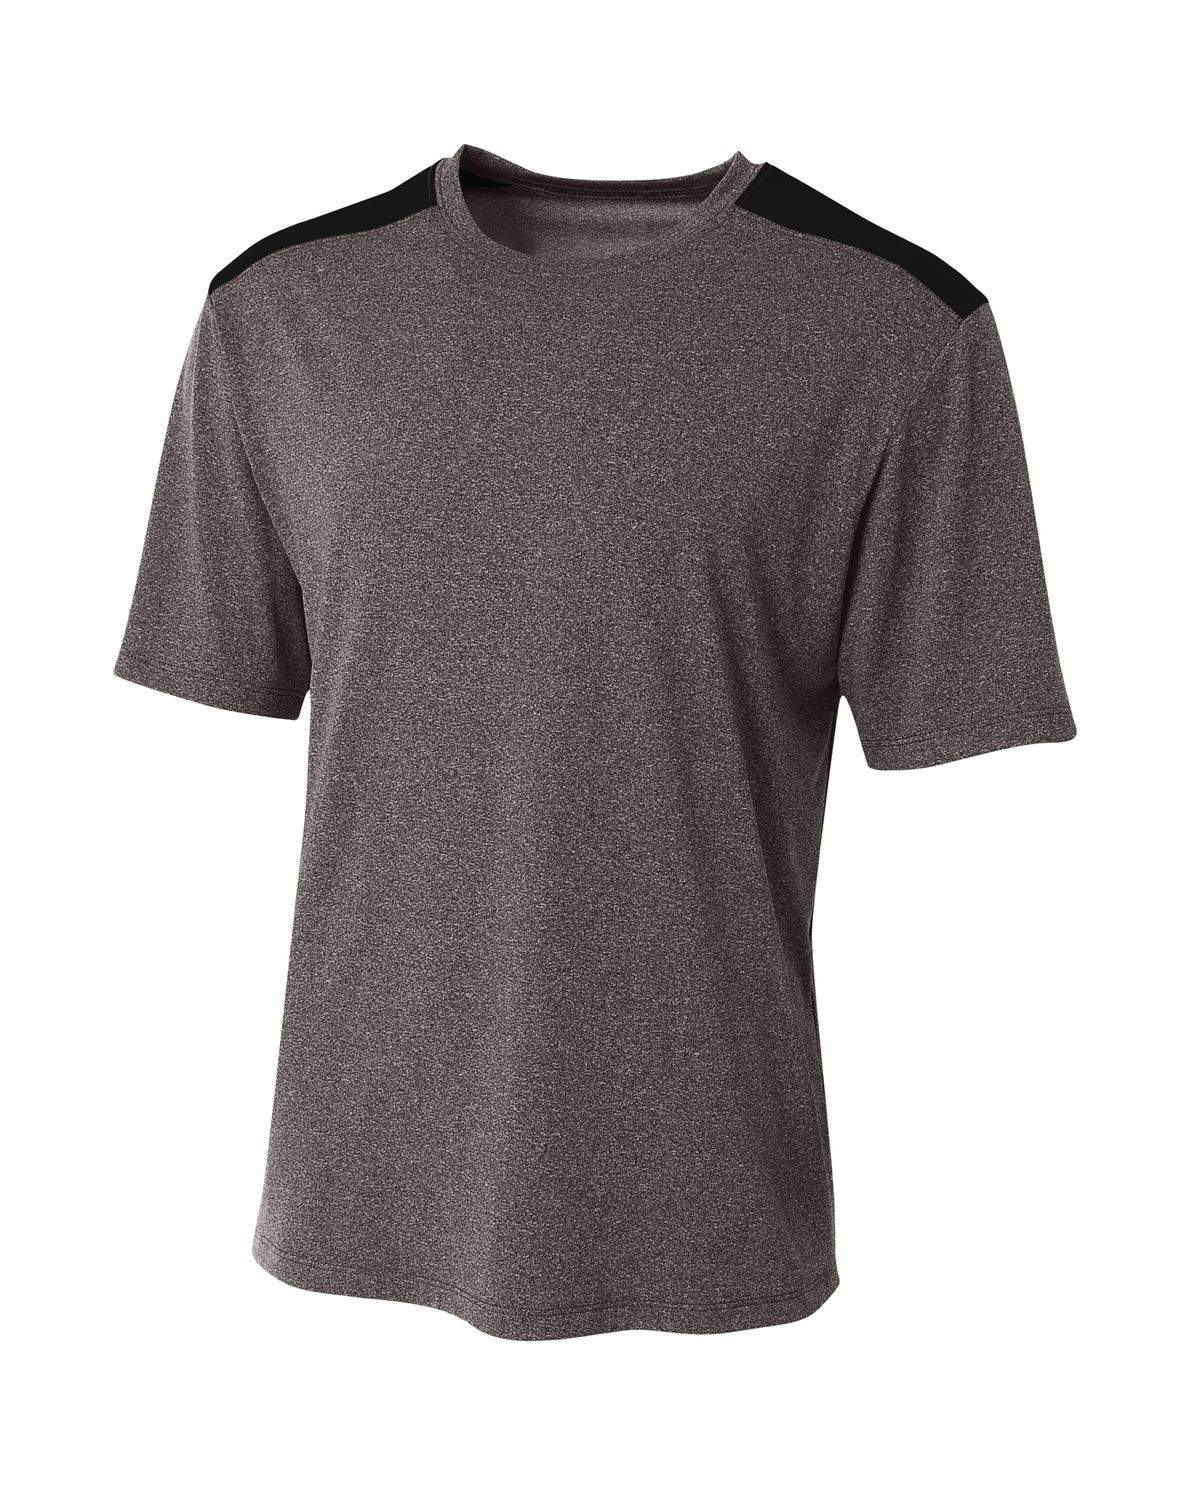 'A4 N3100 Men's Tourney Heather Color Block T-Shirt'